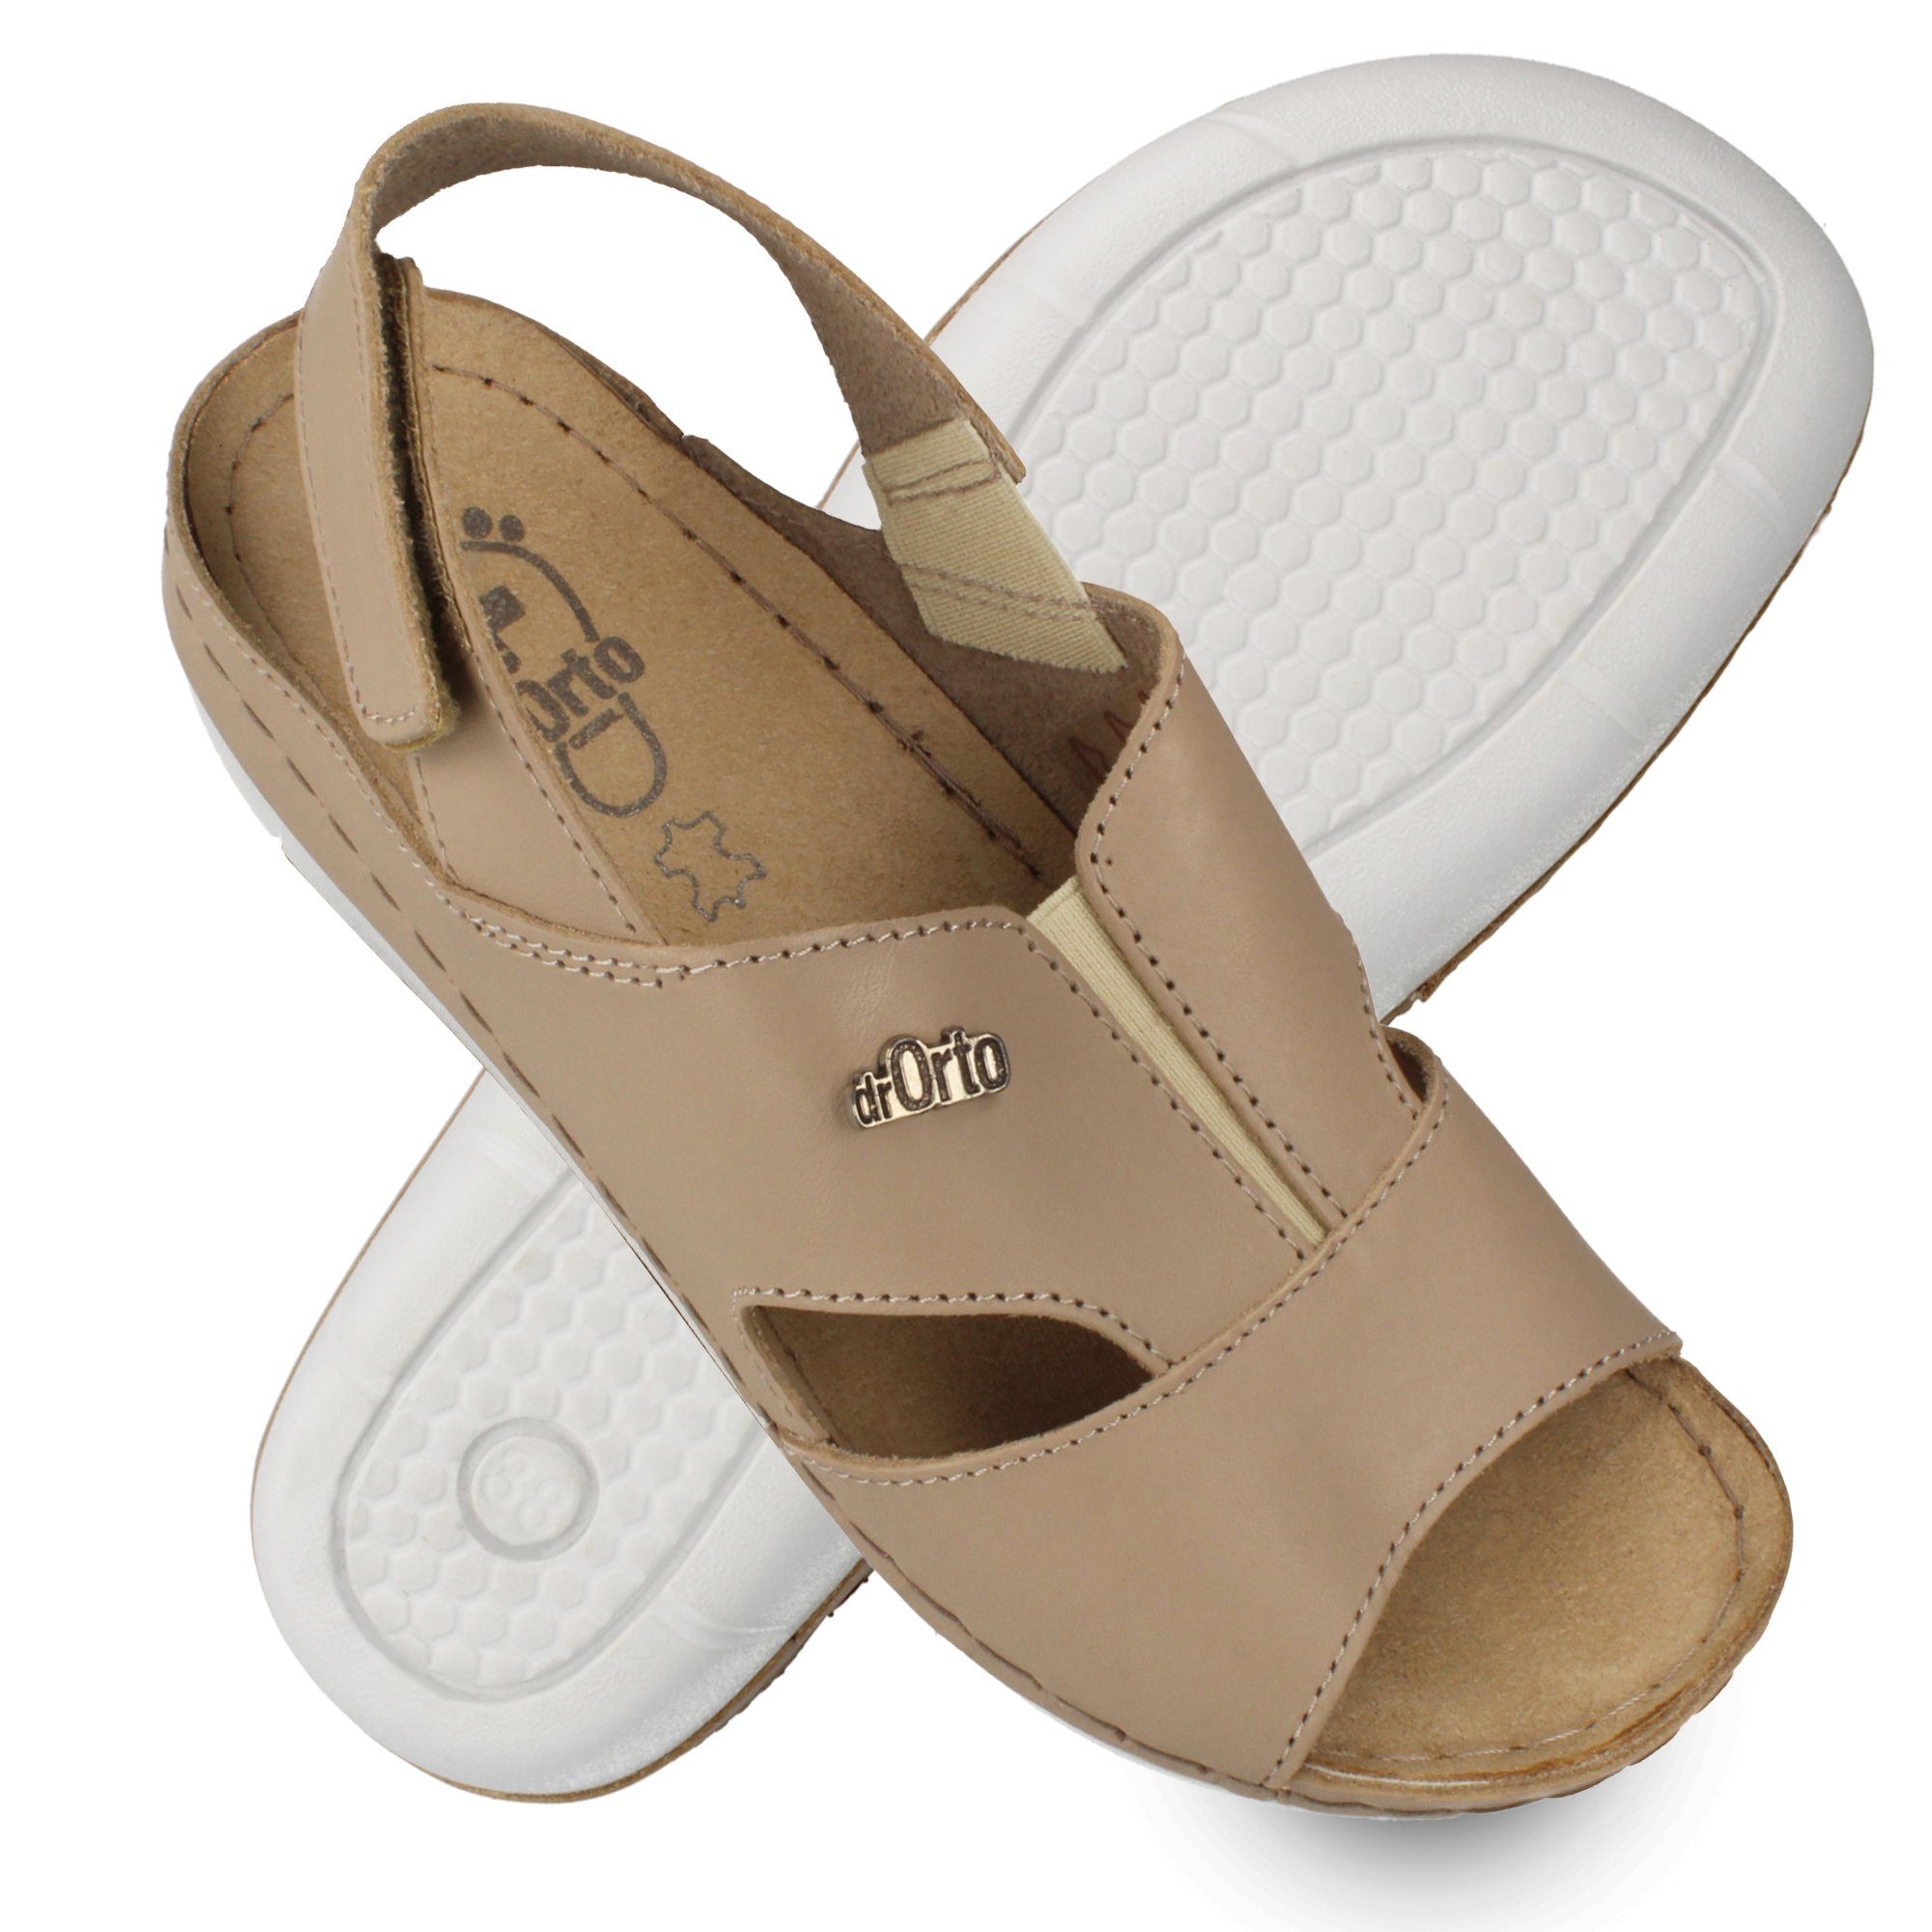 Dr. Orto Bequeme Sandale für Damen in verschiedenen Farben Sandale Beige | Riemchensandalen